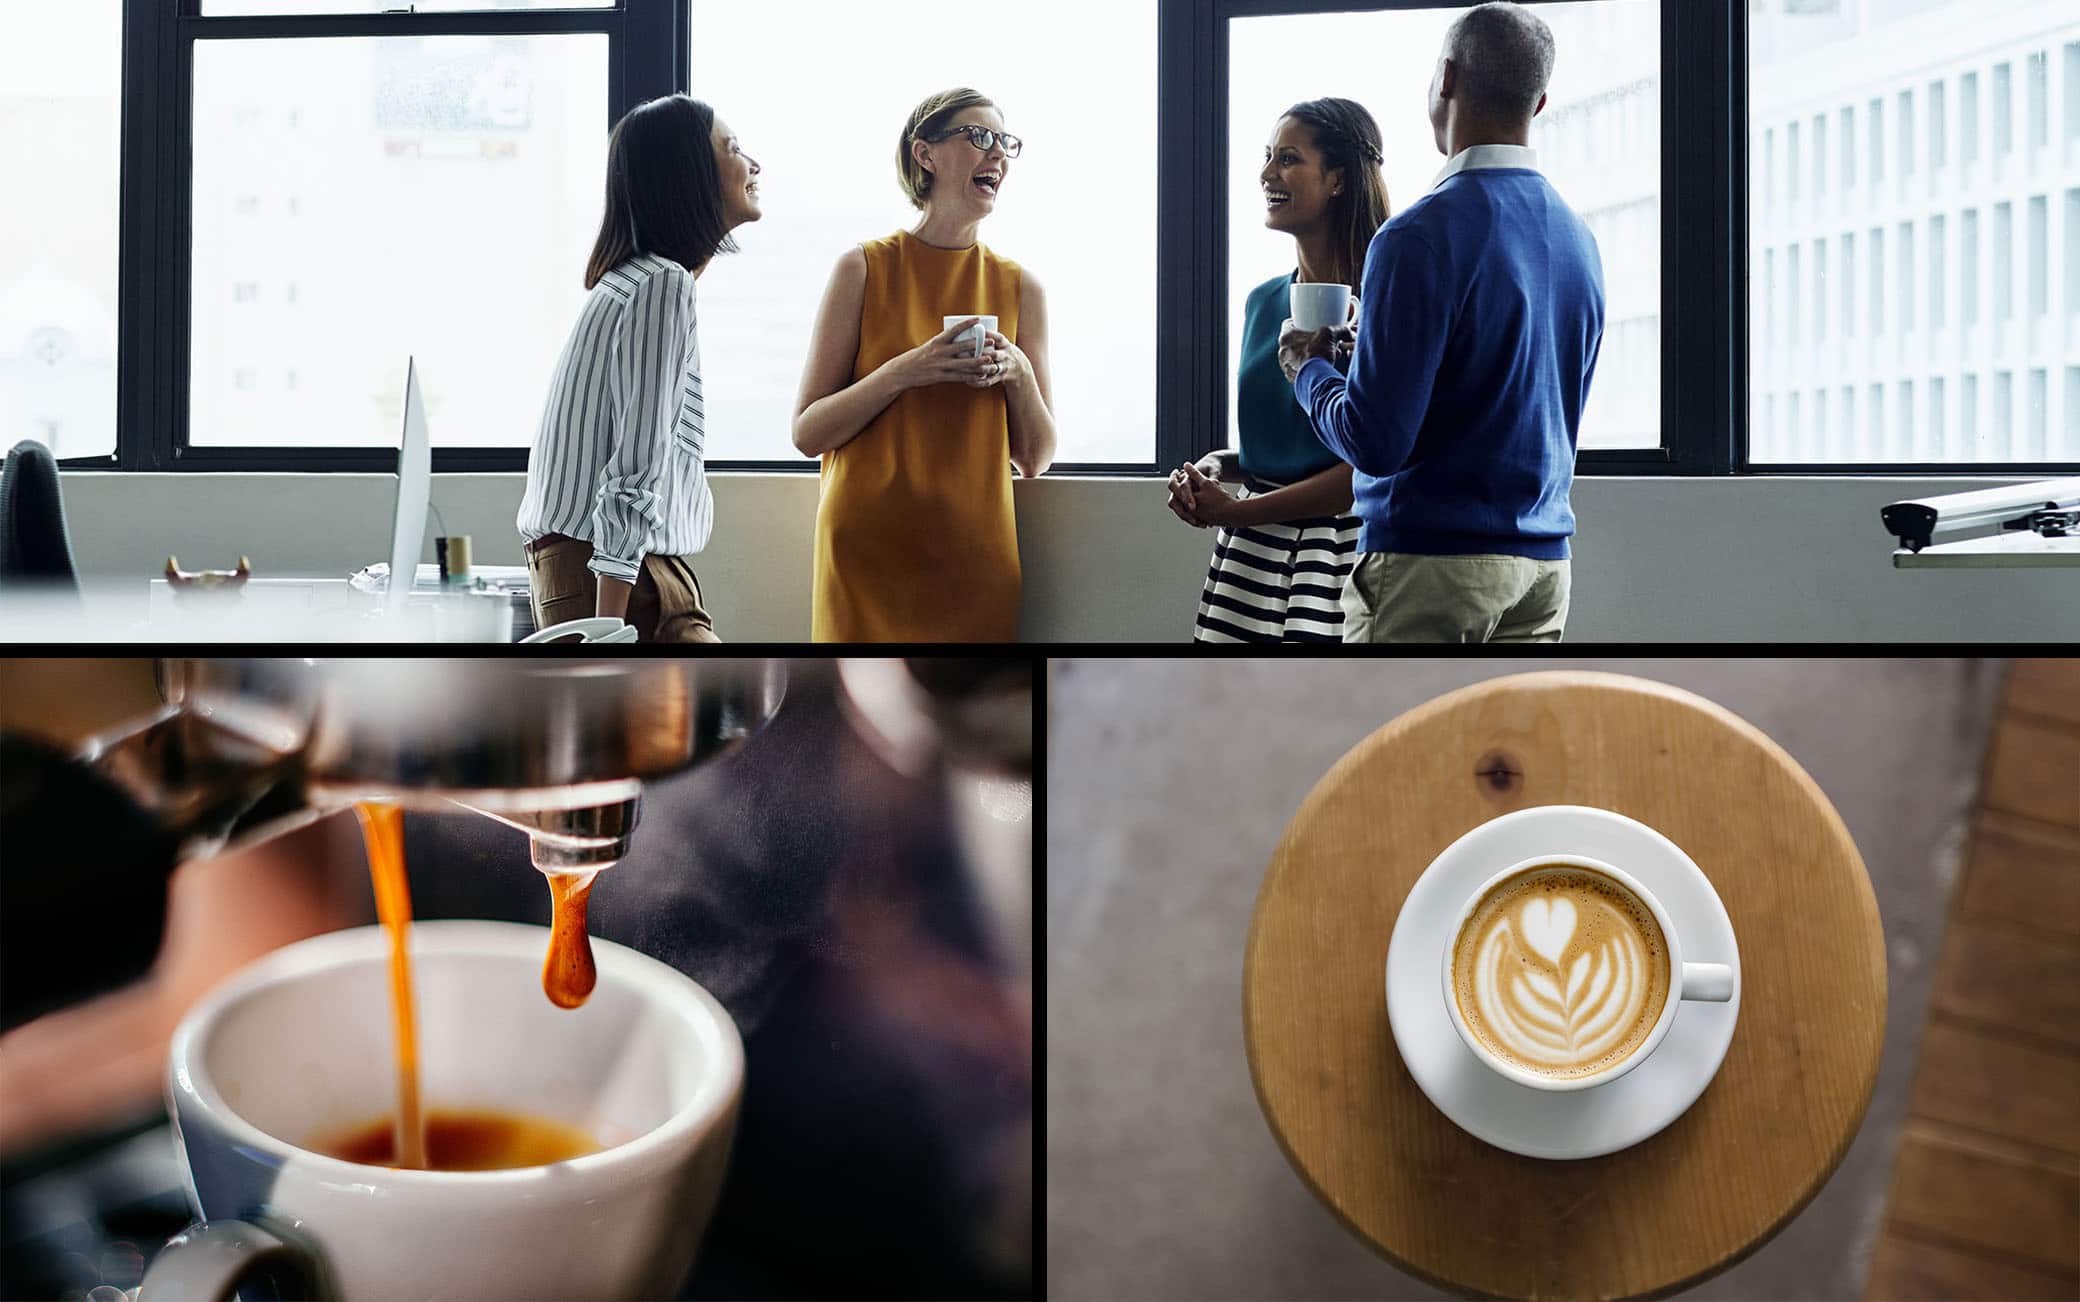 Assapora il Caffè Americano da Nespresso, Che tu sia al lavoro, o nel bel  mezzo di una meritata pausa, puoi contare su un caffè Nespresso  dall'accentuata lunghezza per tenerti compagnia